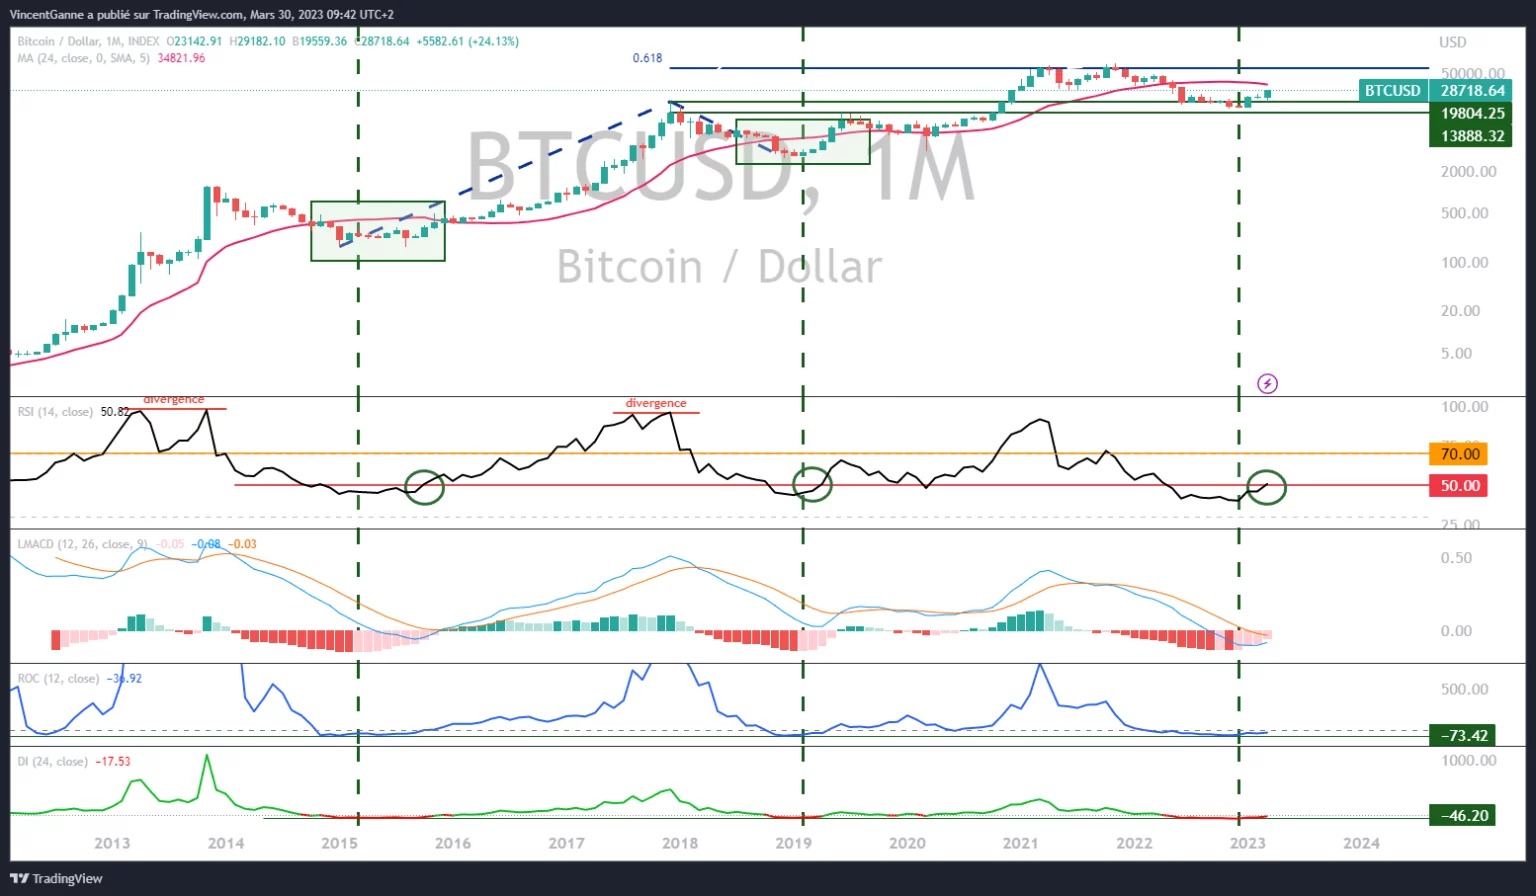 Graf, který odhaluje japonské svíčky v měsíčních údajích o ceně bitcoinu